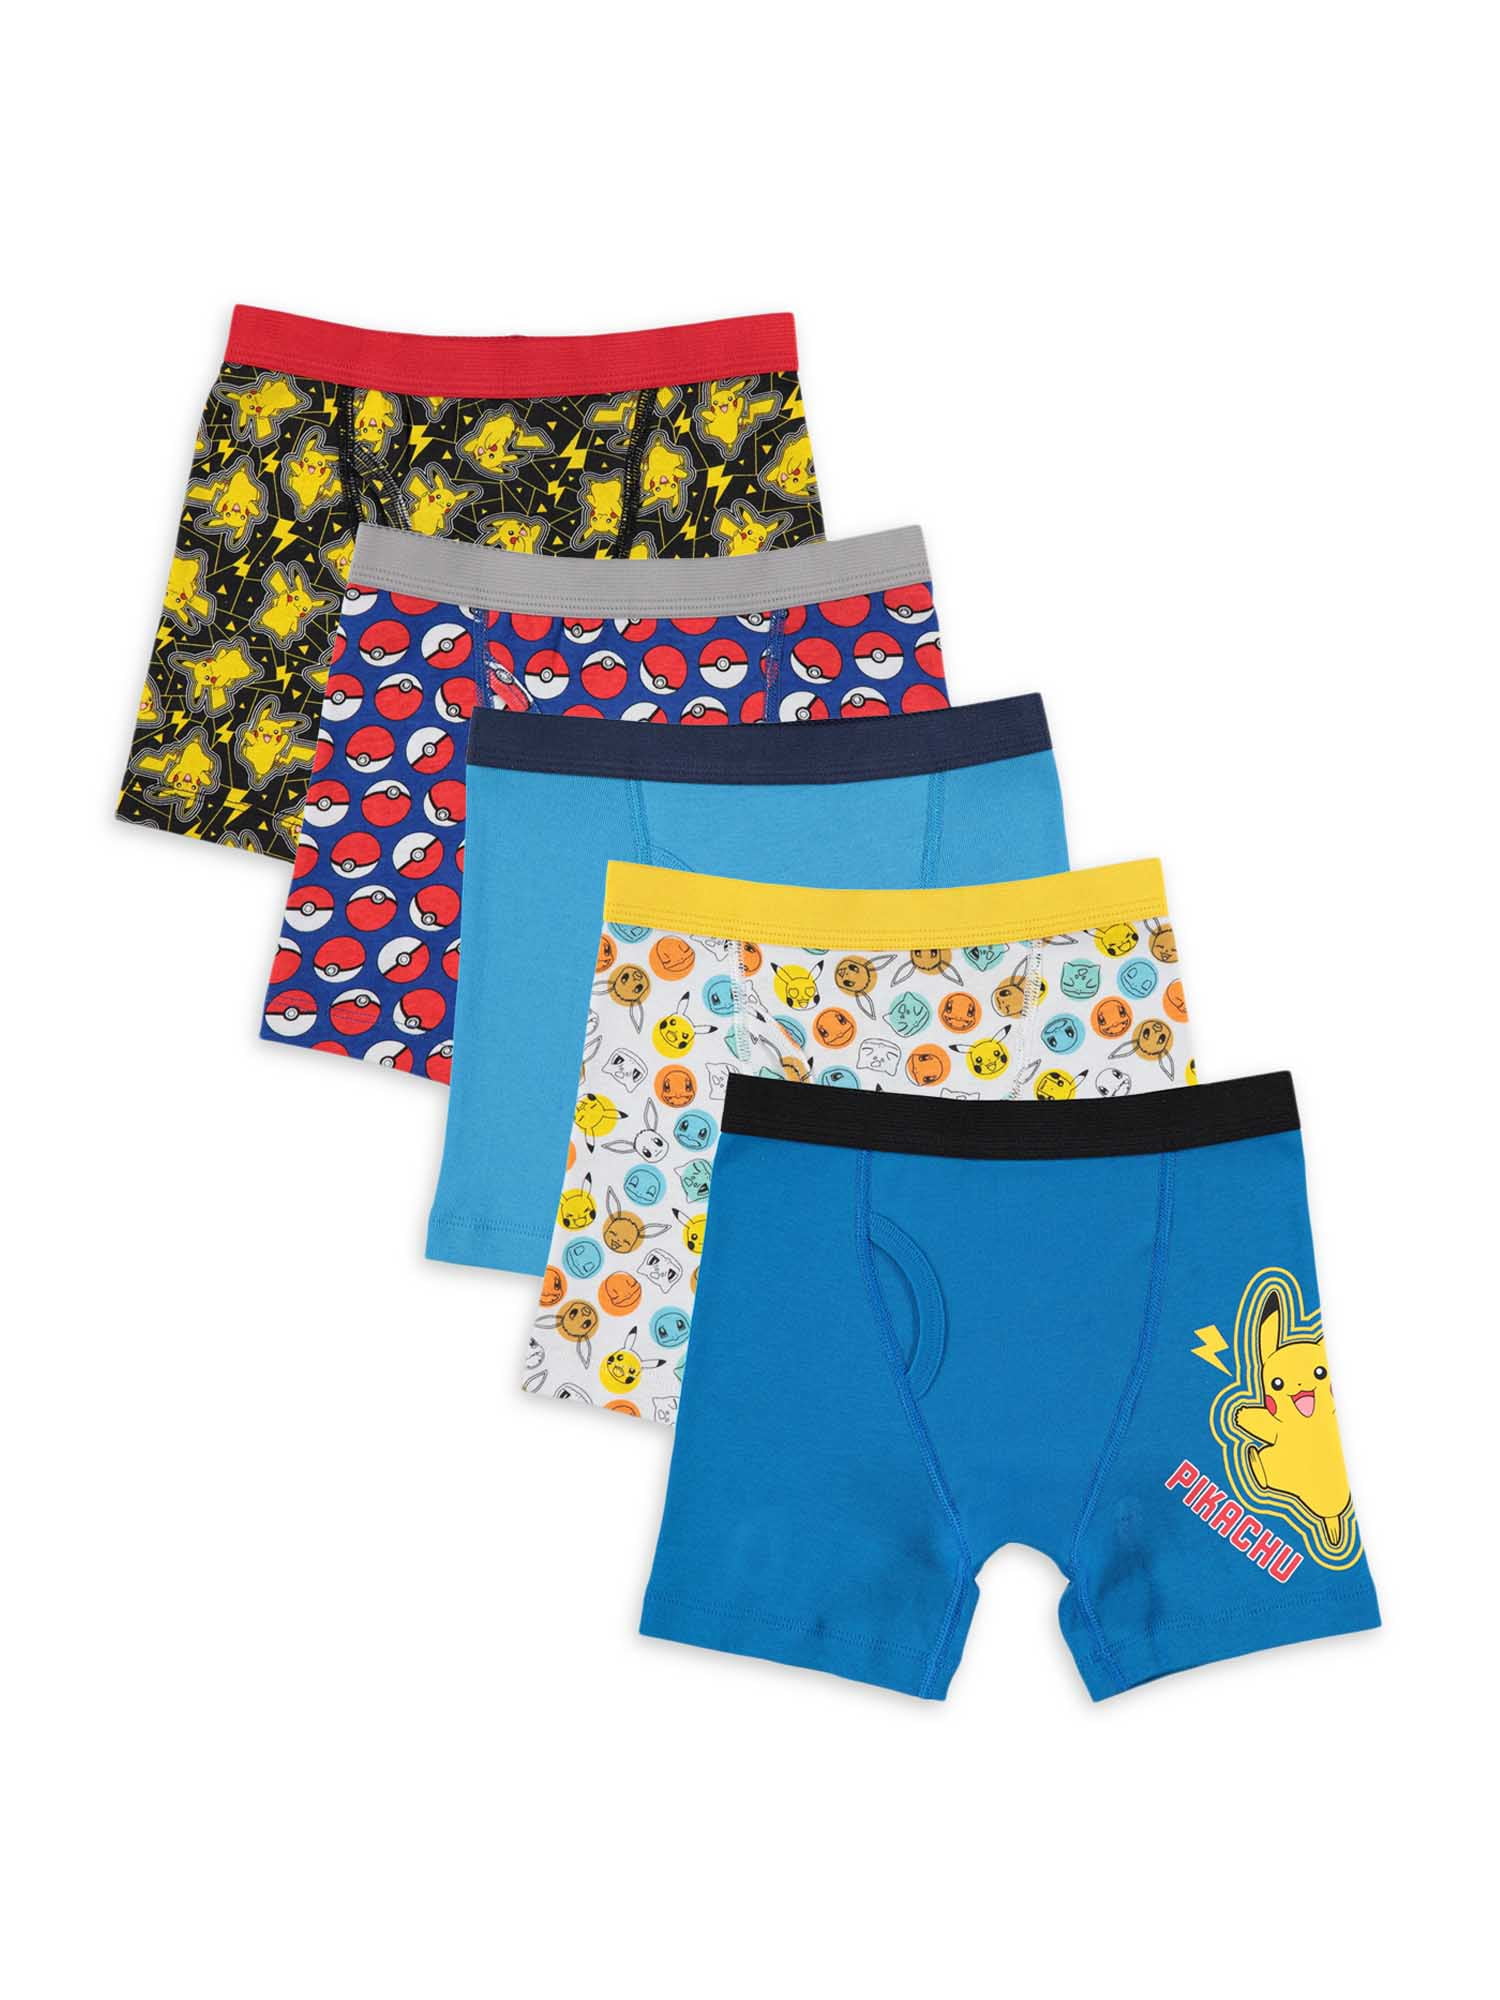 Besparing Winst land Pokemon Boys Underwear, 5 Pack Boxer Briefs Sizes 4-8 - Walmart.com